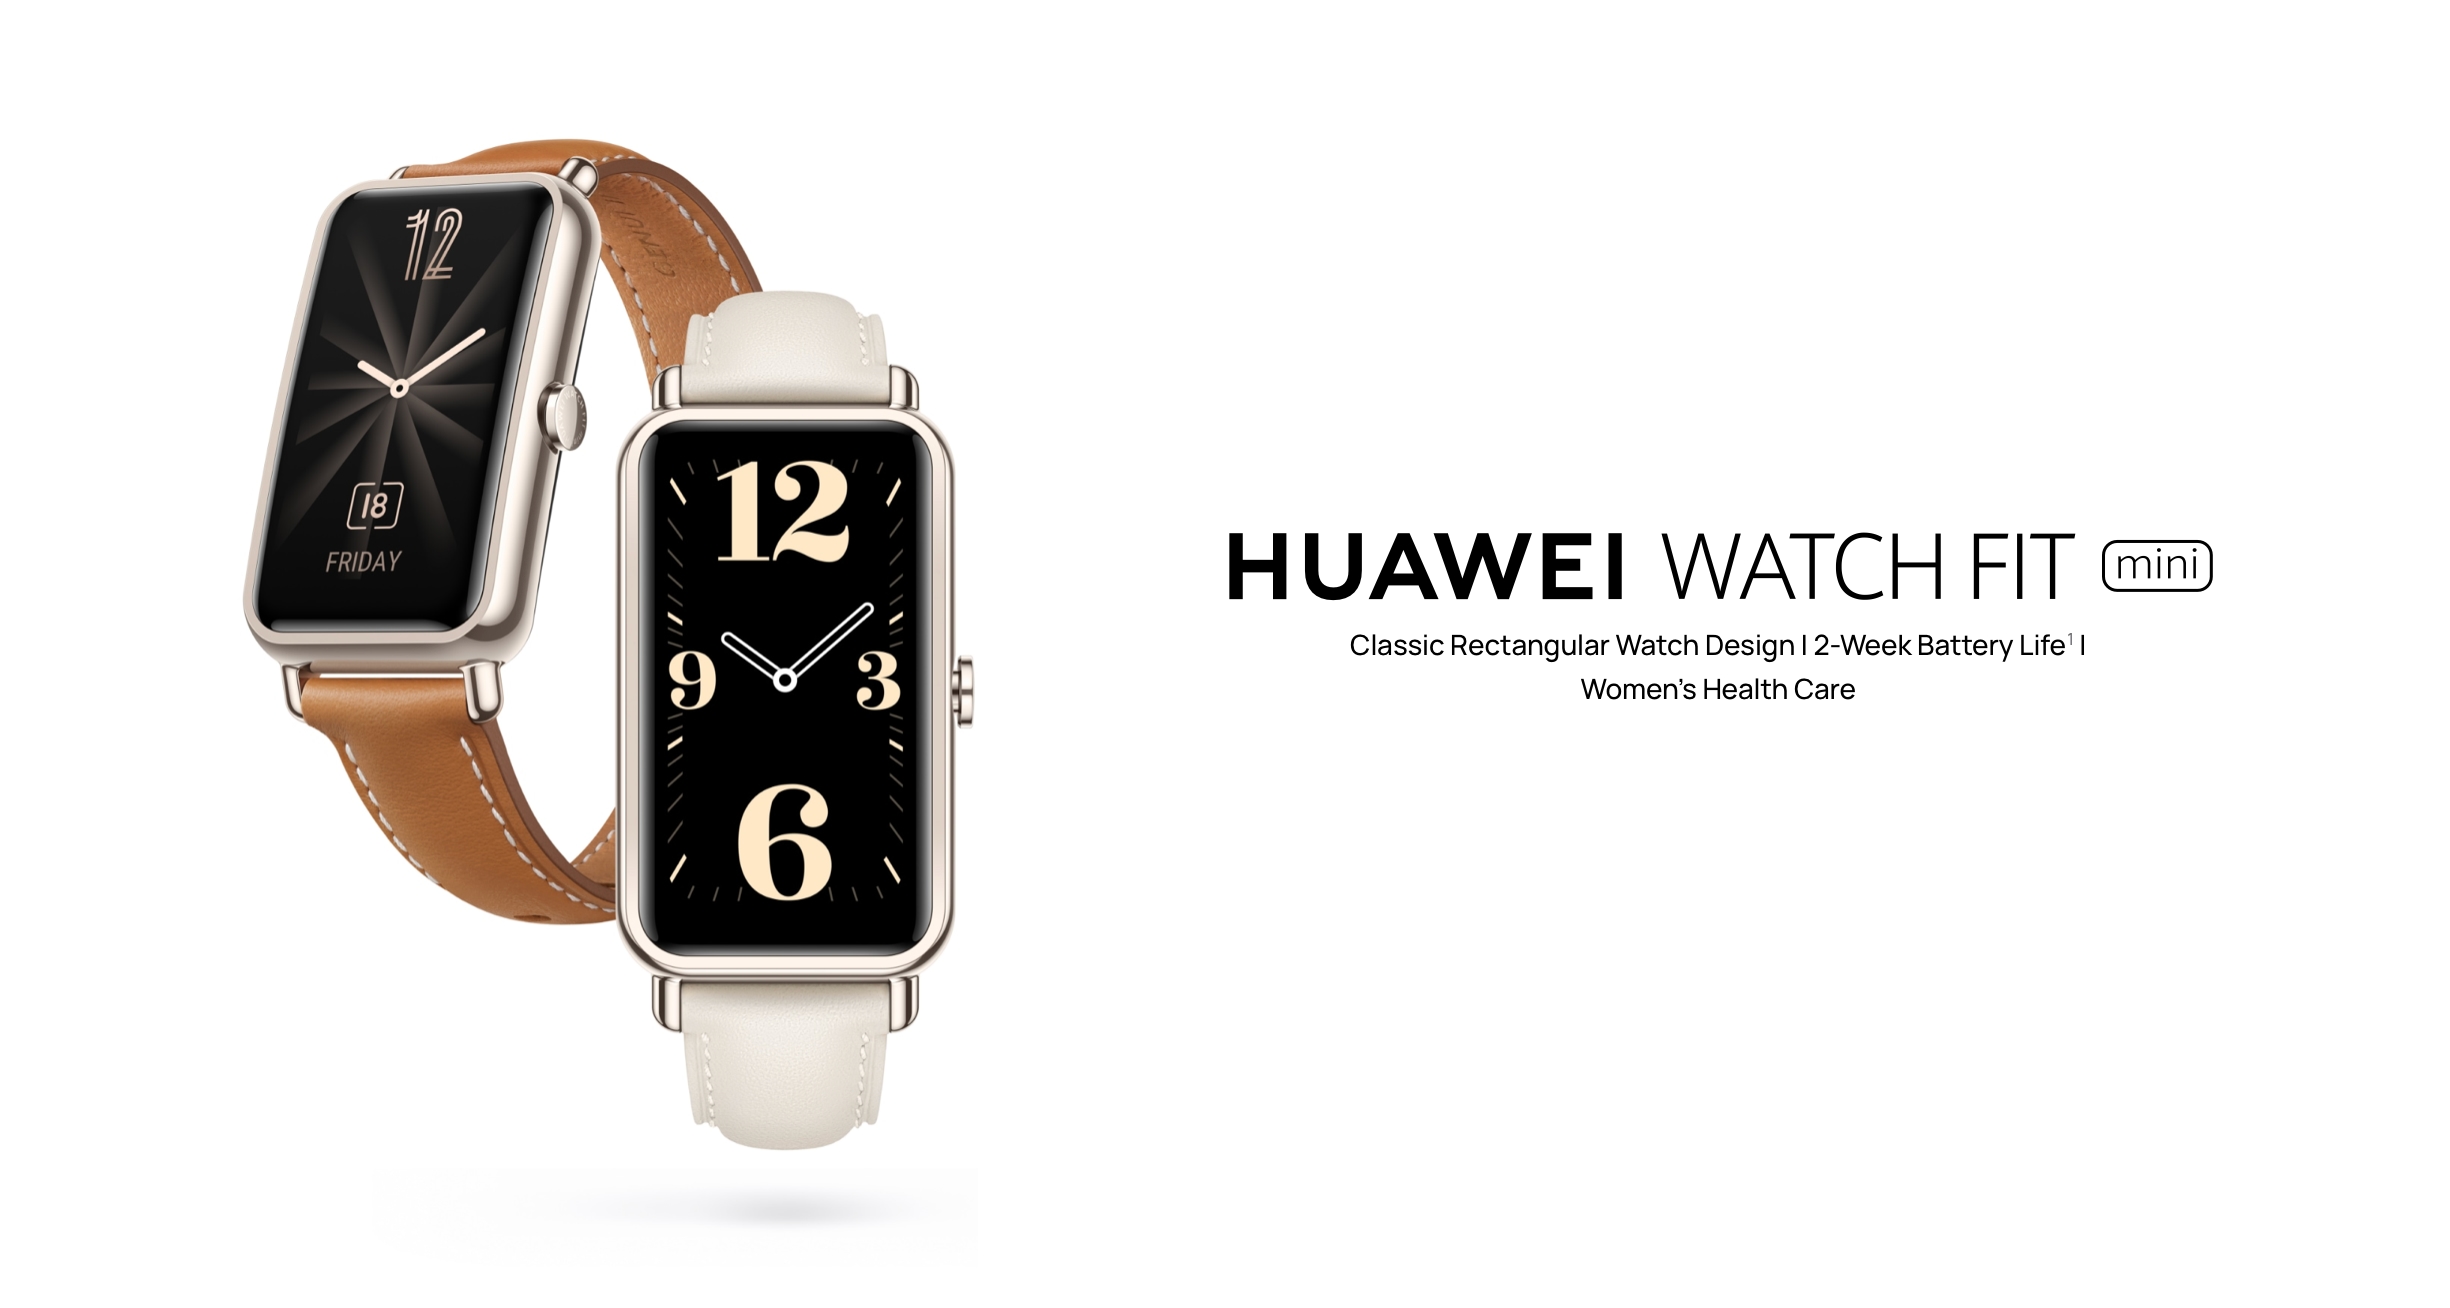 Lancement en Europe de la Huawei Watch Fit Mini, bracelet intelligent doté d'un écran AMOLED, d'un capteur SpO2 et d'une autonomie de 14 jours